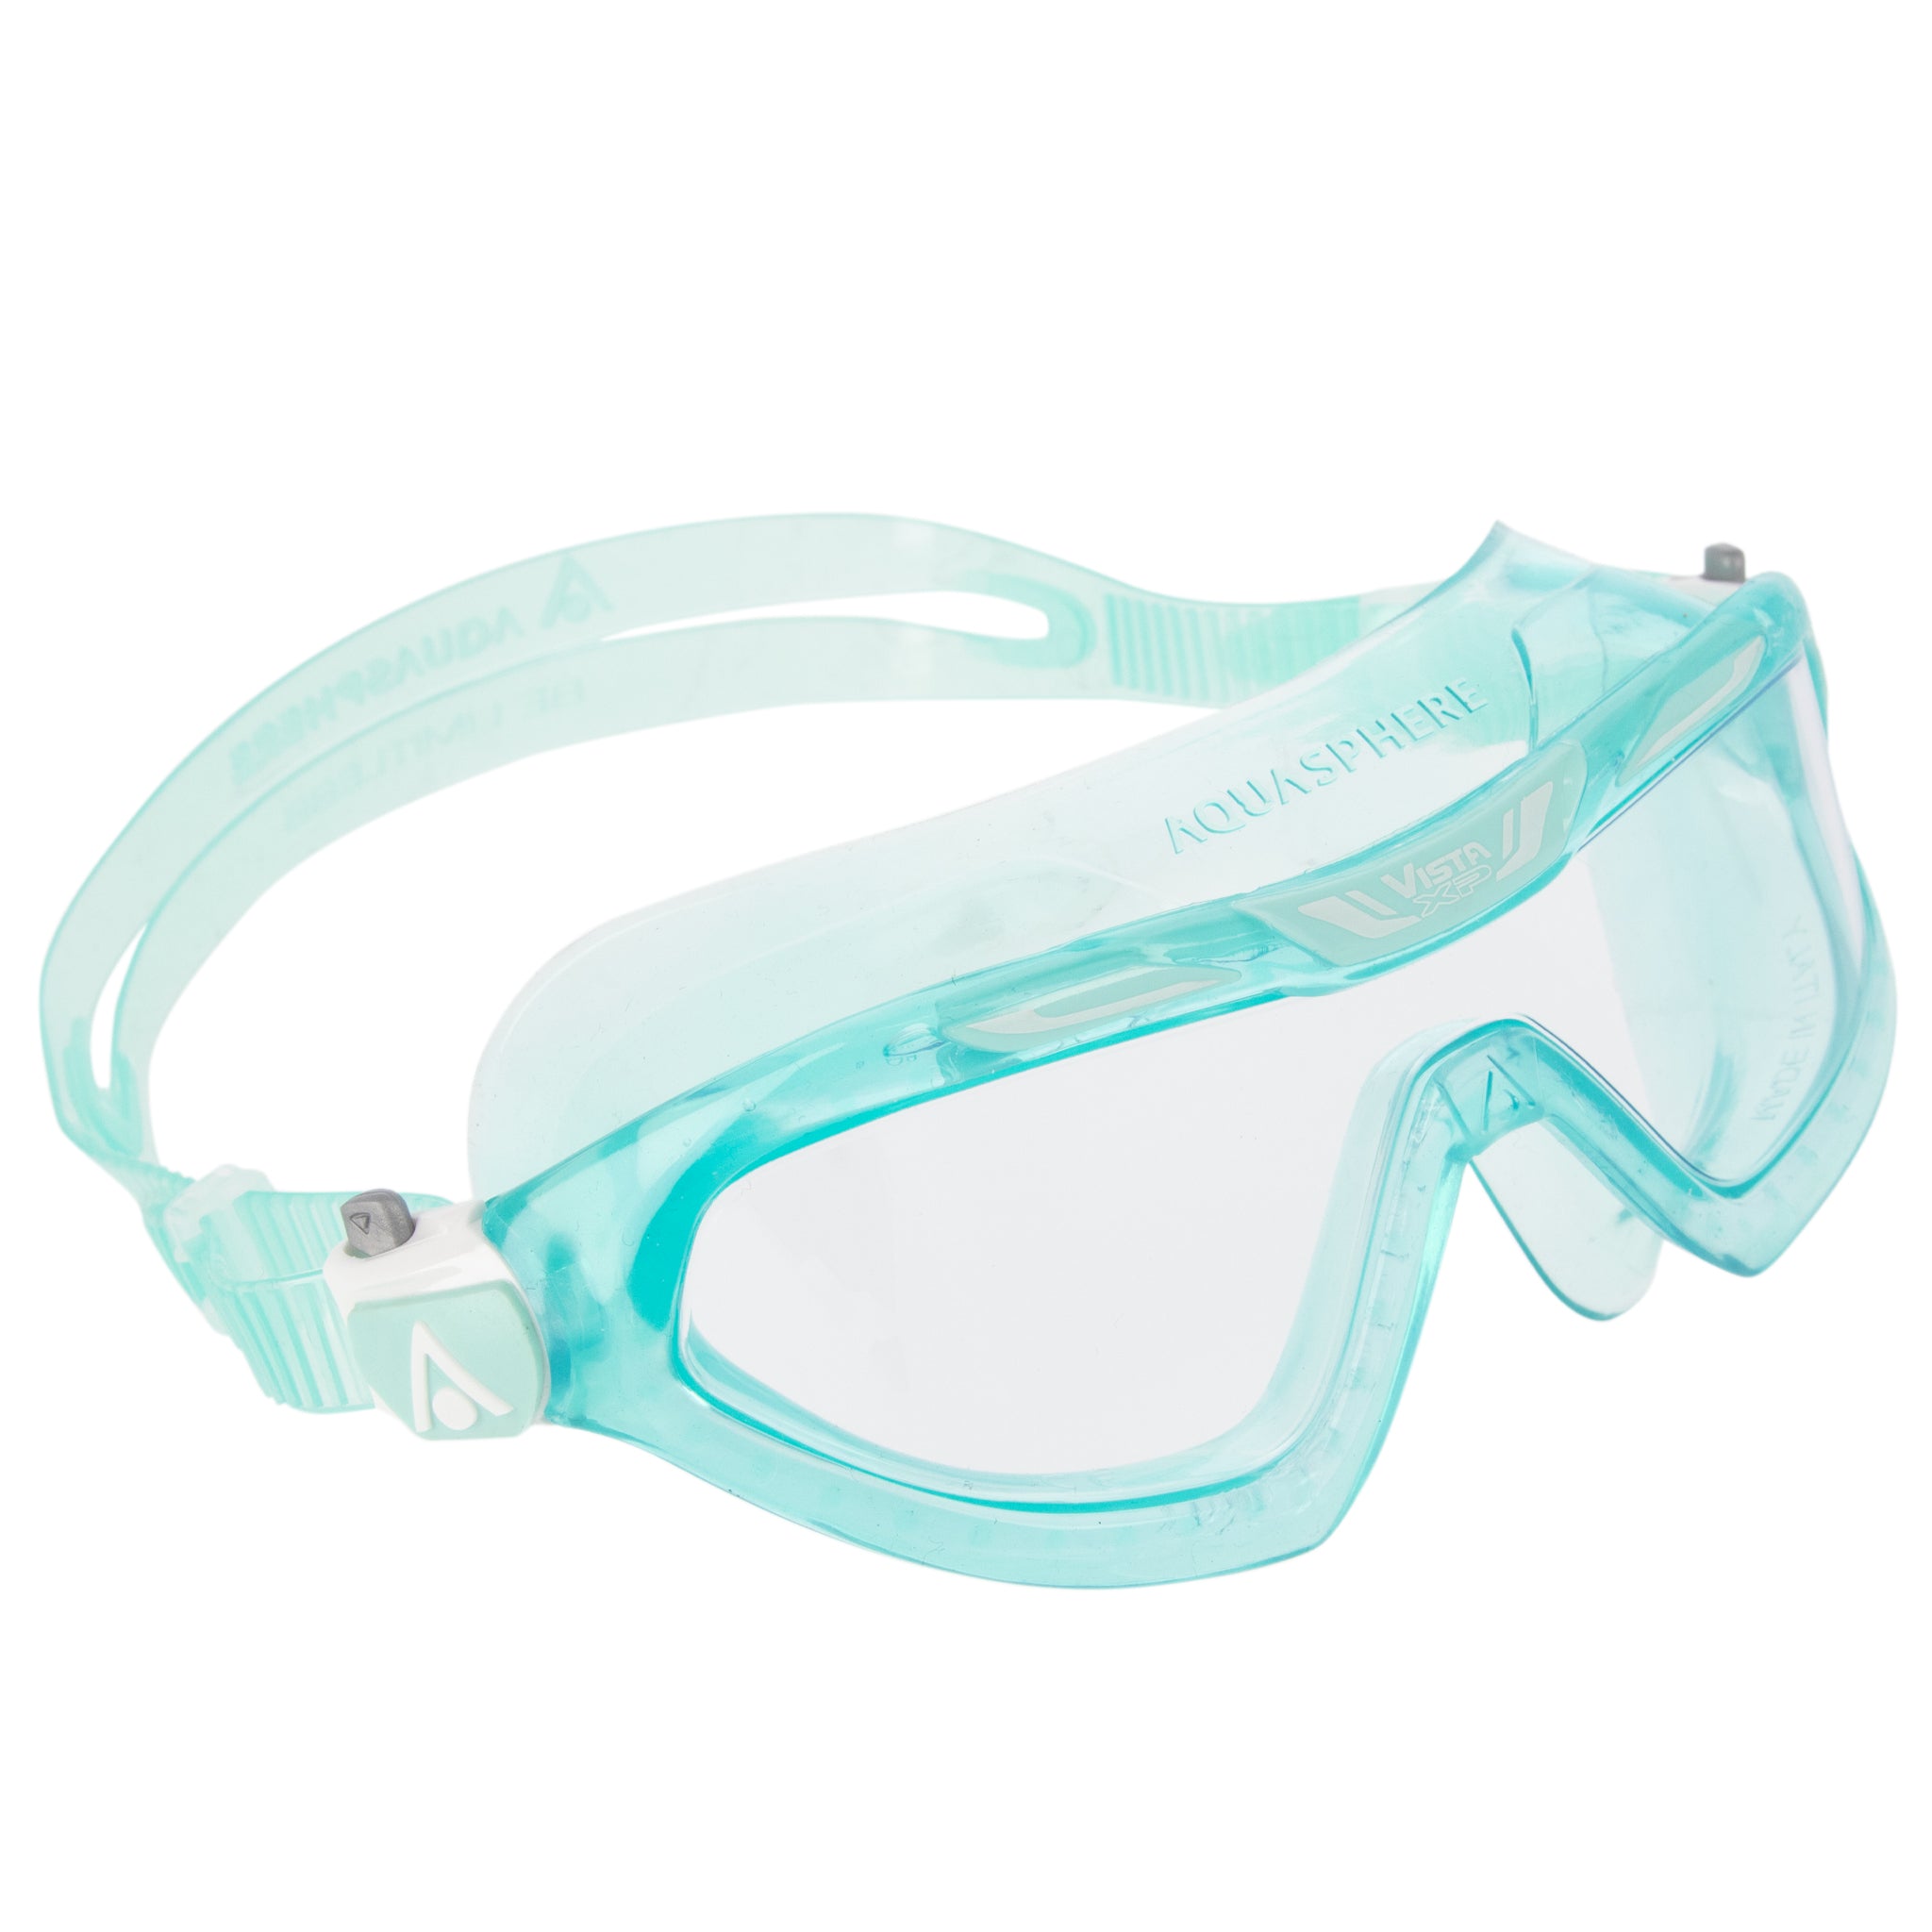 Aquasphere Vista XP Swimming Goggles Mask Clear Lens | Right